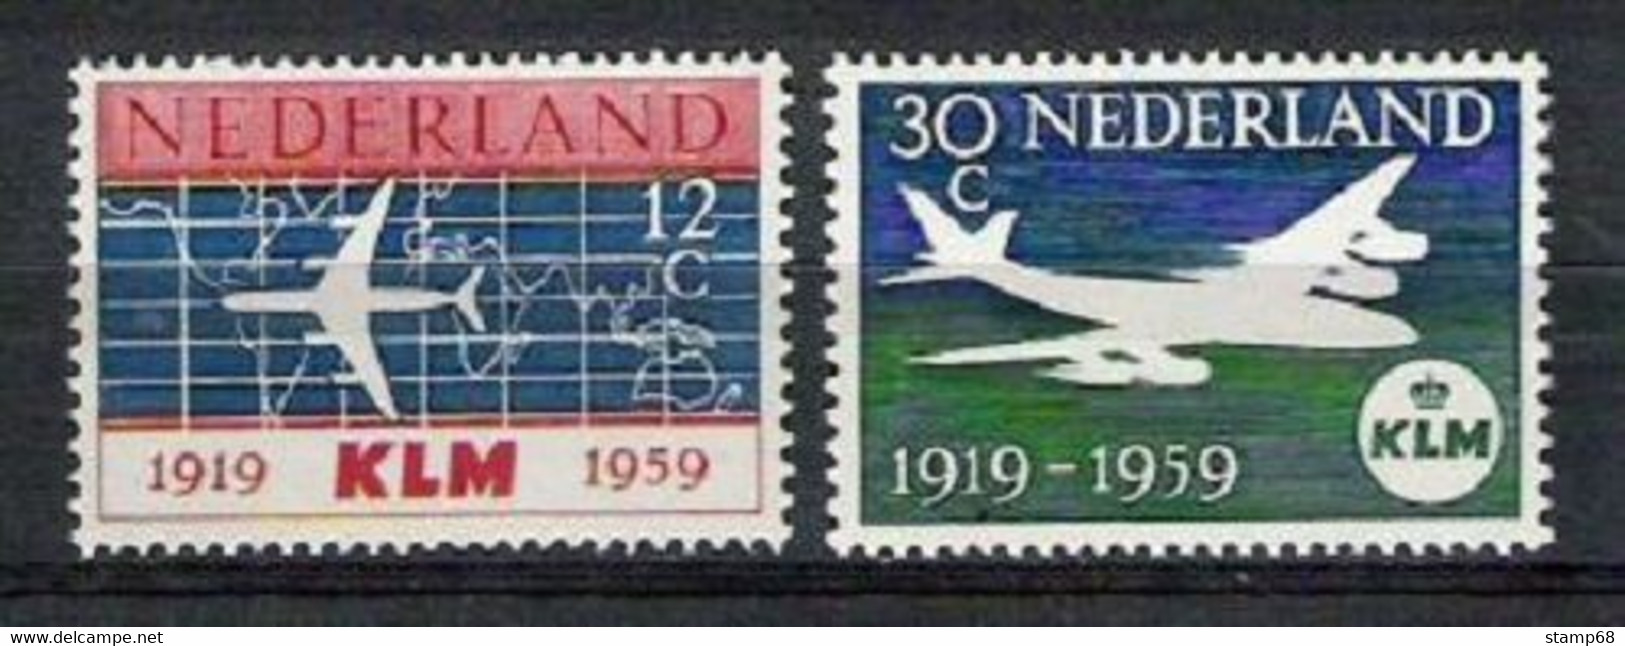 Nederland NVPH 729-30 Serie 40 Jaar KLM 1959 MNH Postfris Vliegtuigen Airplanes - Neufs